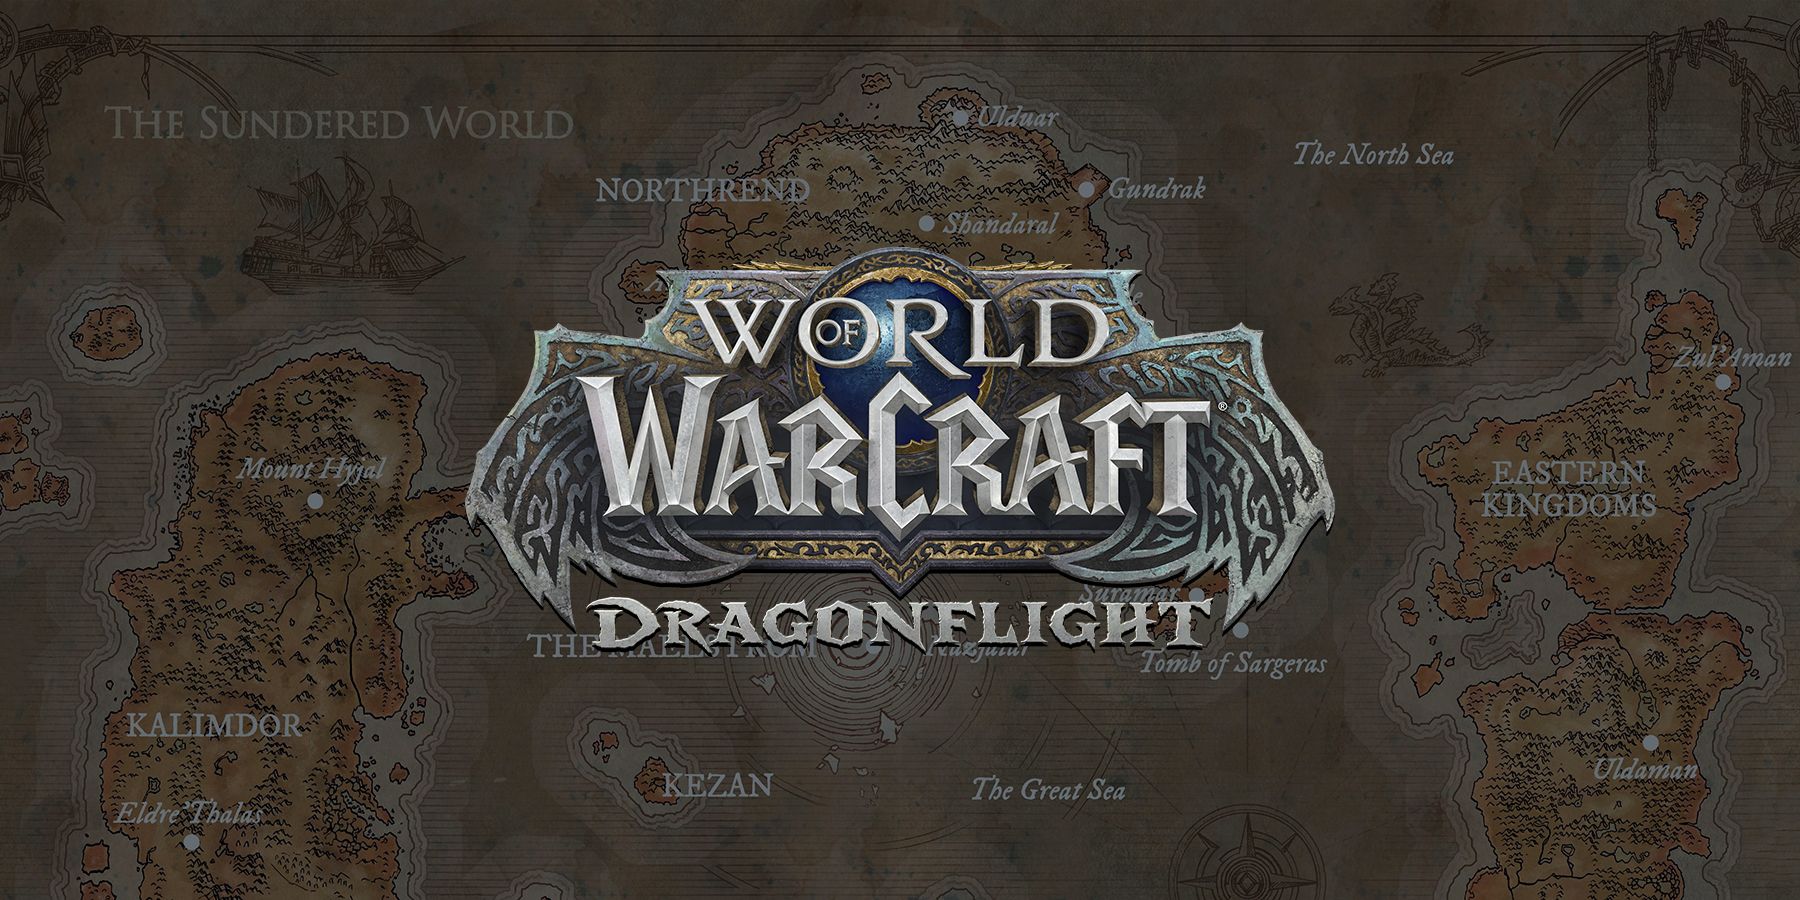 wow thế giới của warcraft azeroth bản đồ quá lộn xộn người chơi nhận xét hài hước dragonflight